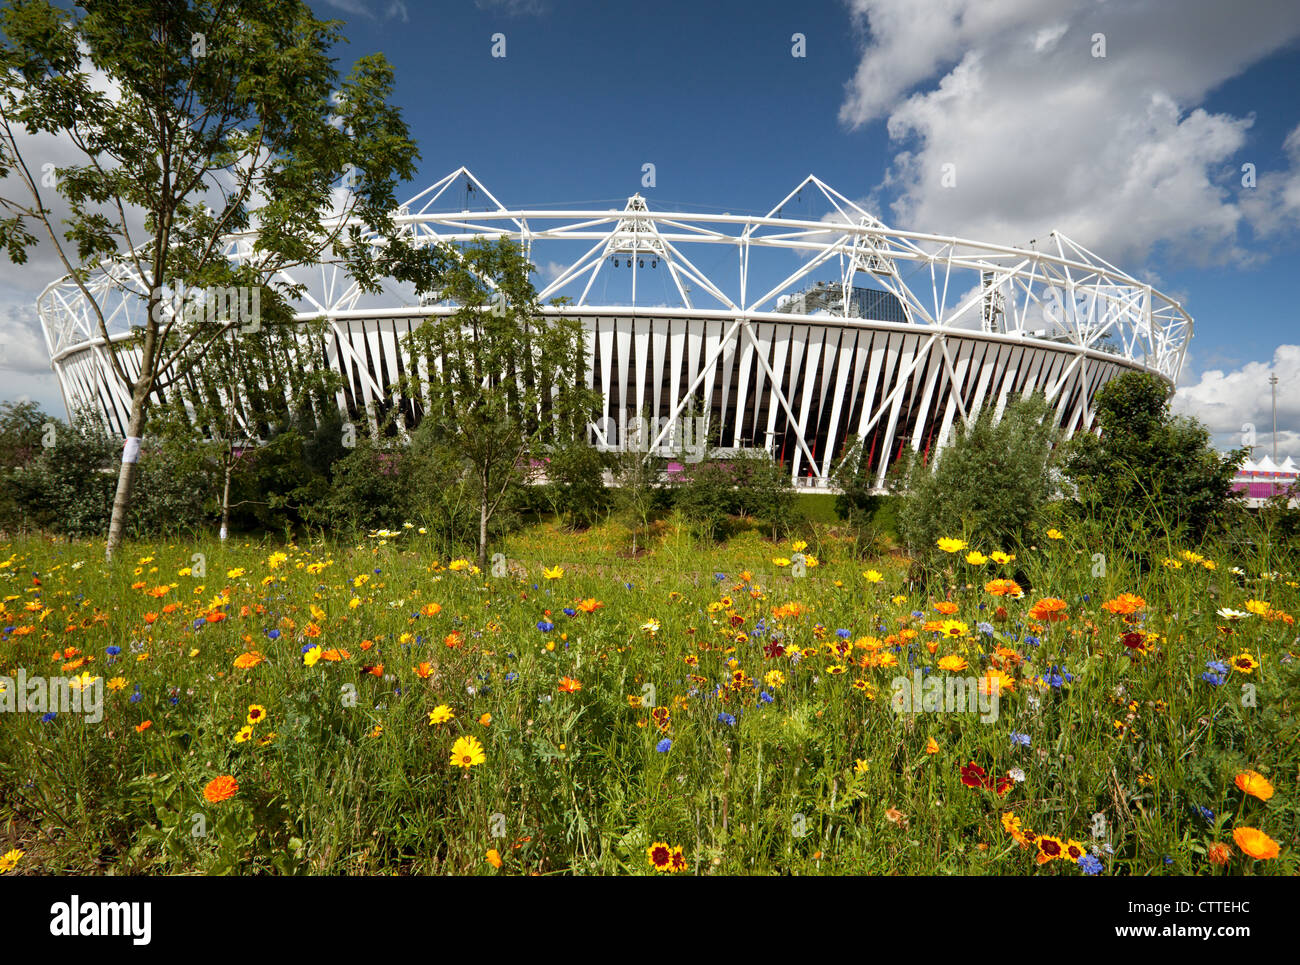 Les Jeux Olympiques de 2012 à Londres - Stade avec des fleurs sauvages en premier plan Banque D'Images